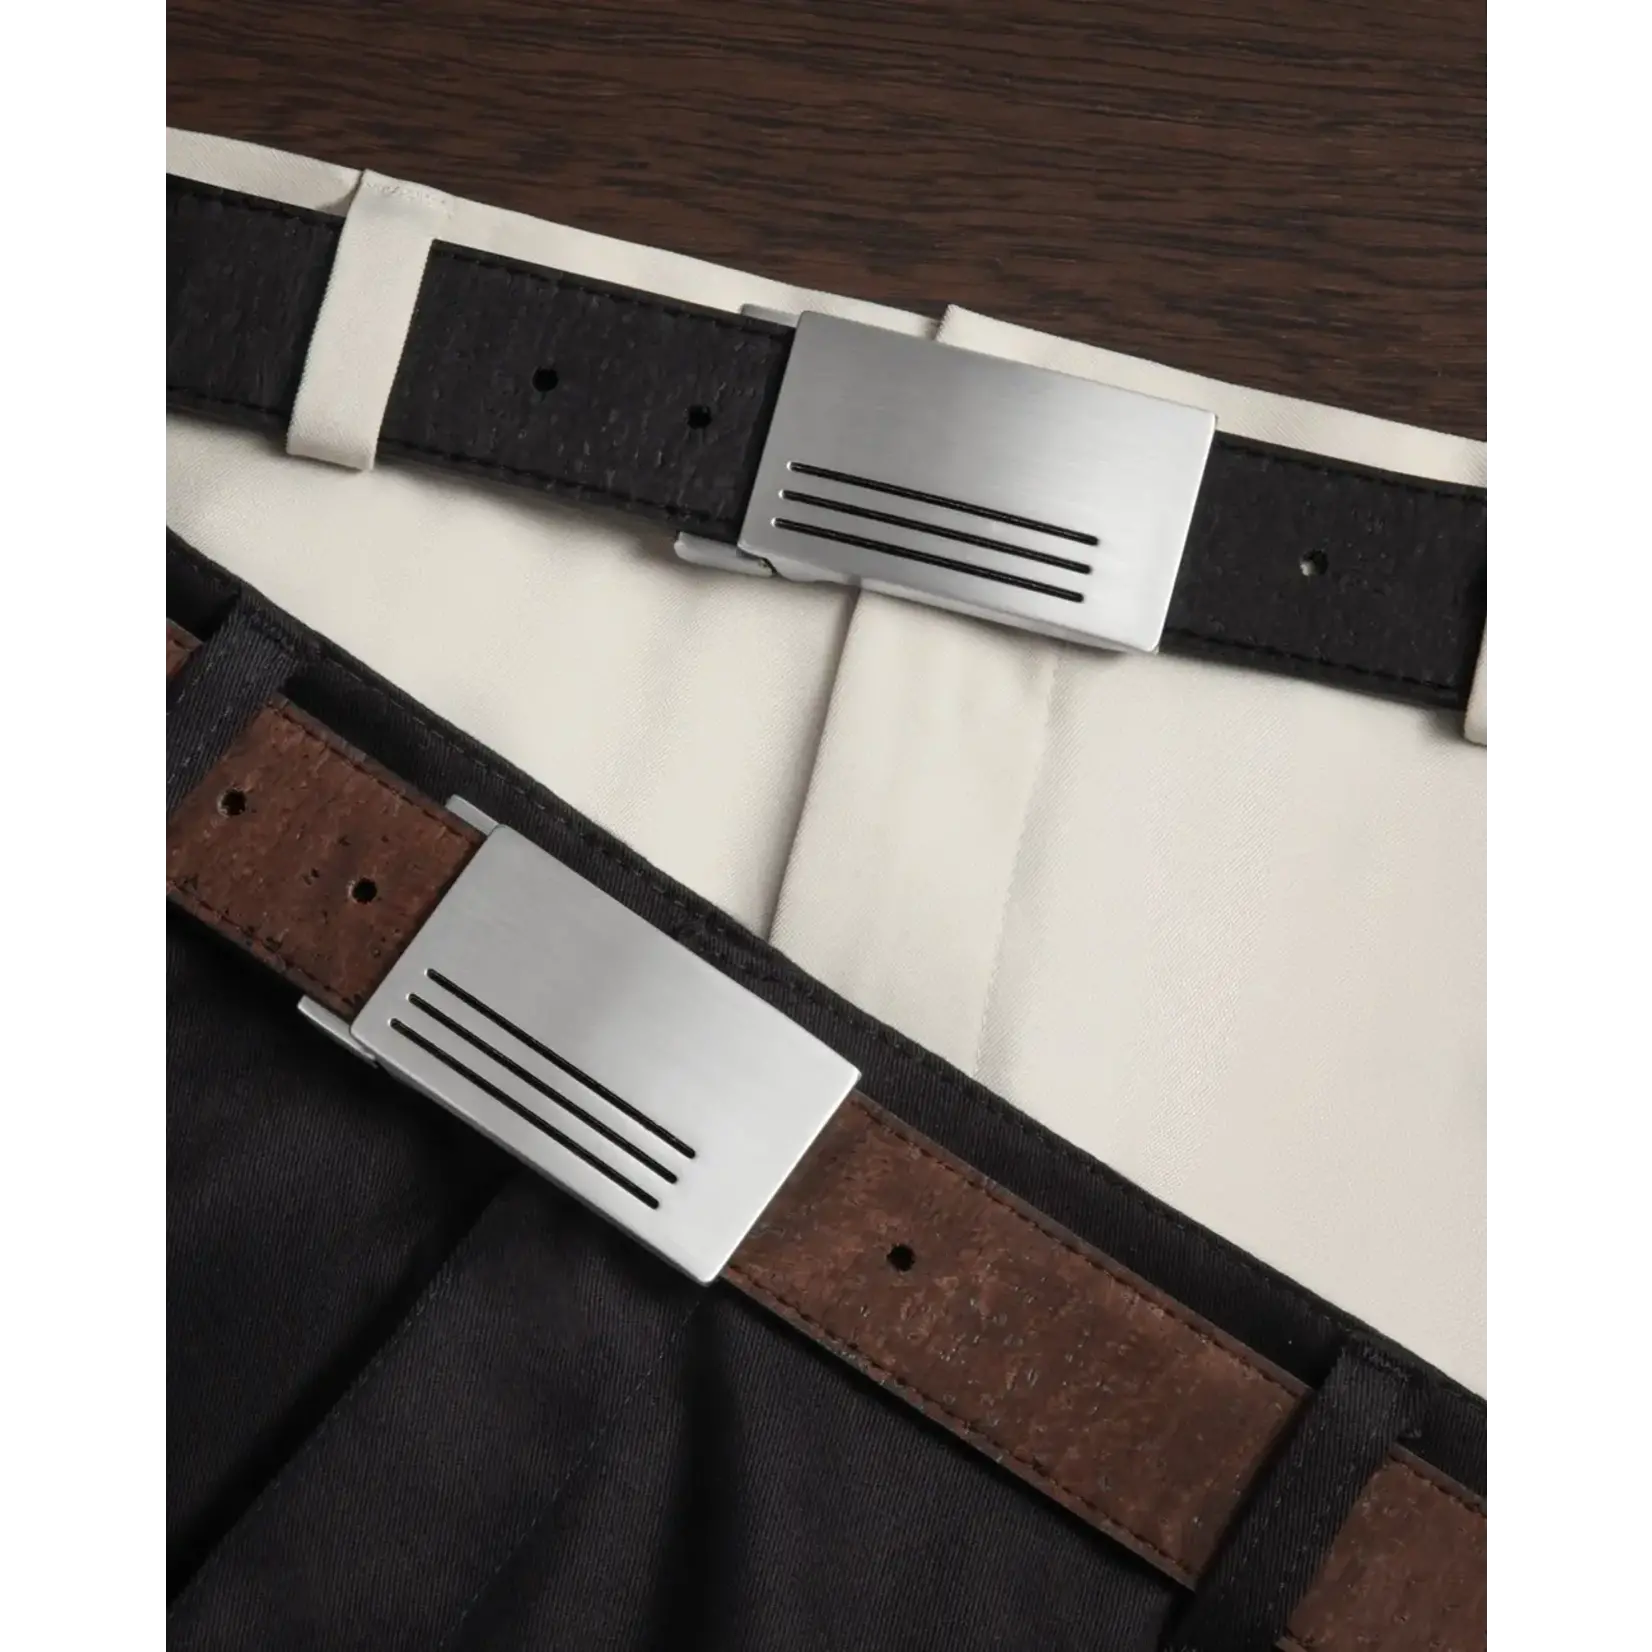 Corkor Reversible Cork Belt with Plaque Buckle 35MM